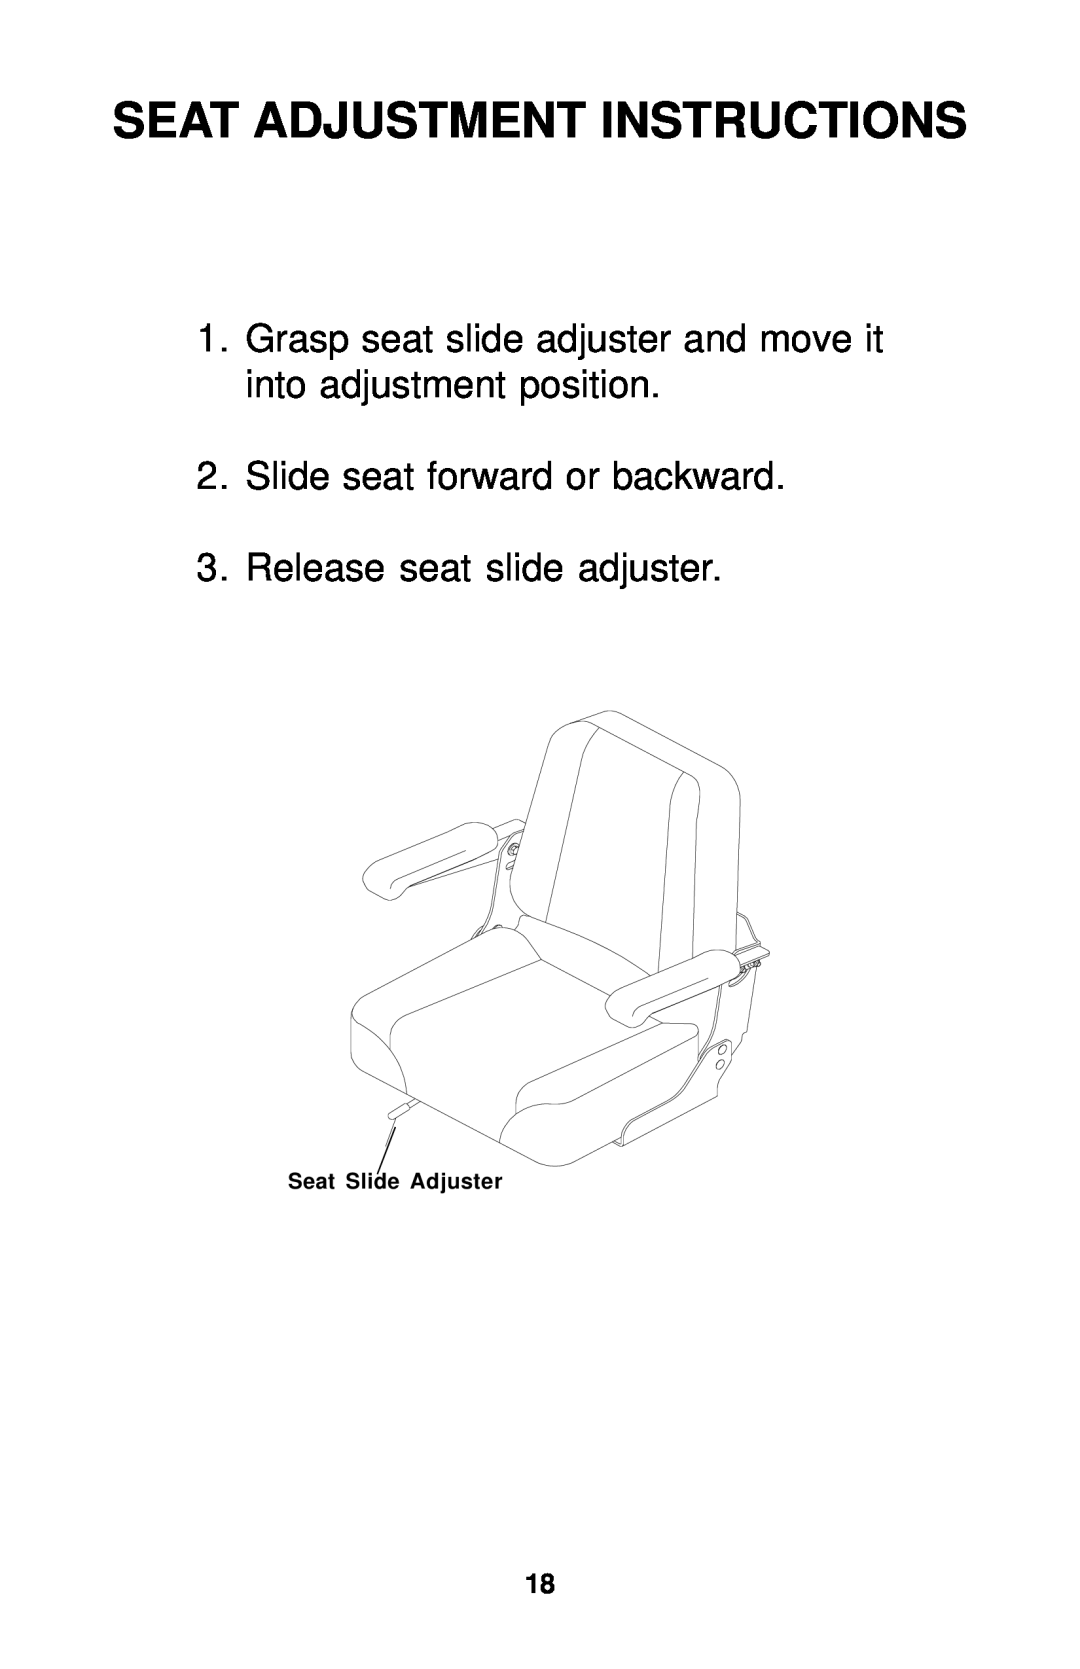 Dixon 18134-1004 manual Seat Adjustment Instructions, Slide seat forward or backward, Release seat slide adjuster 